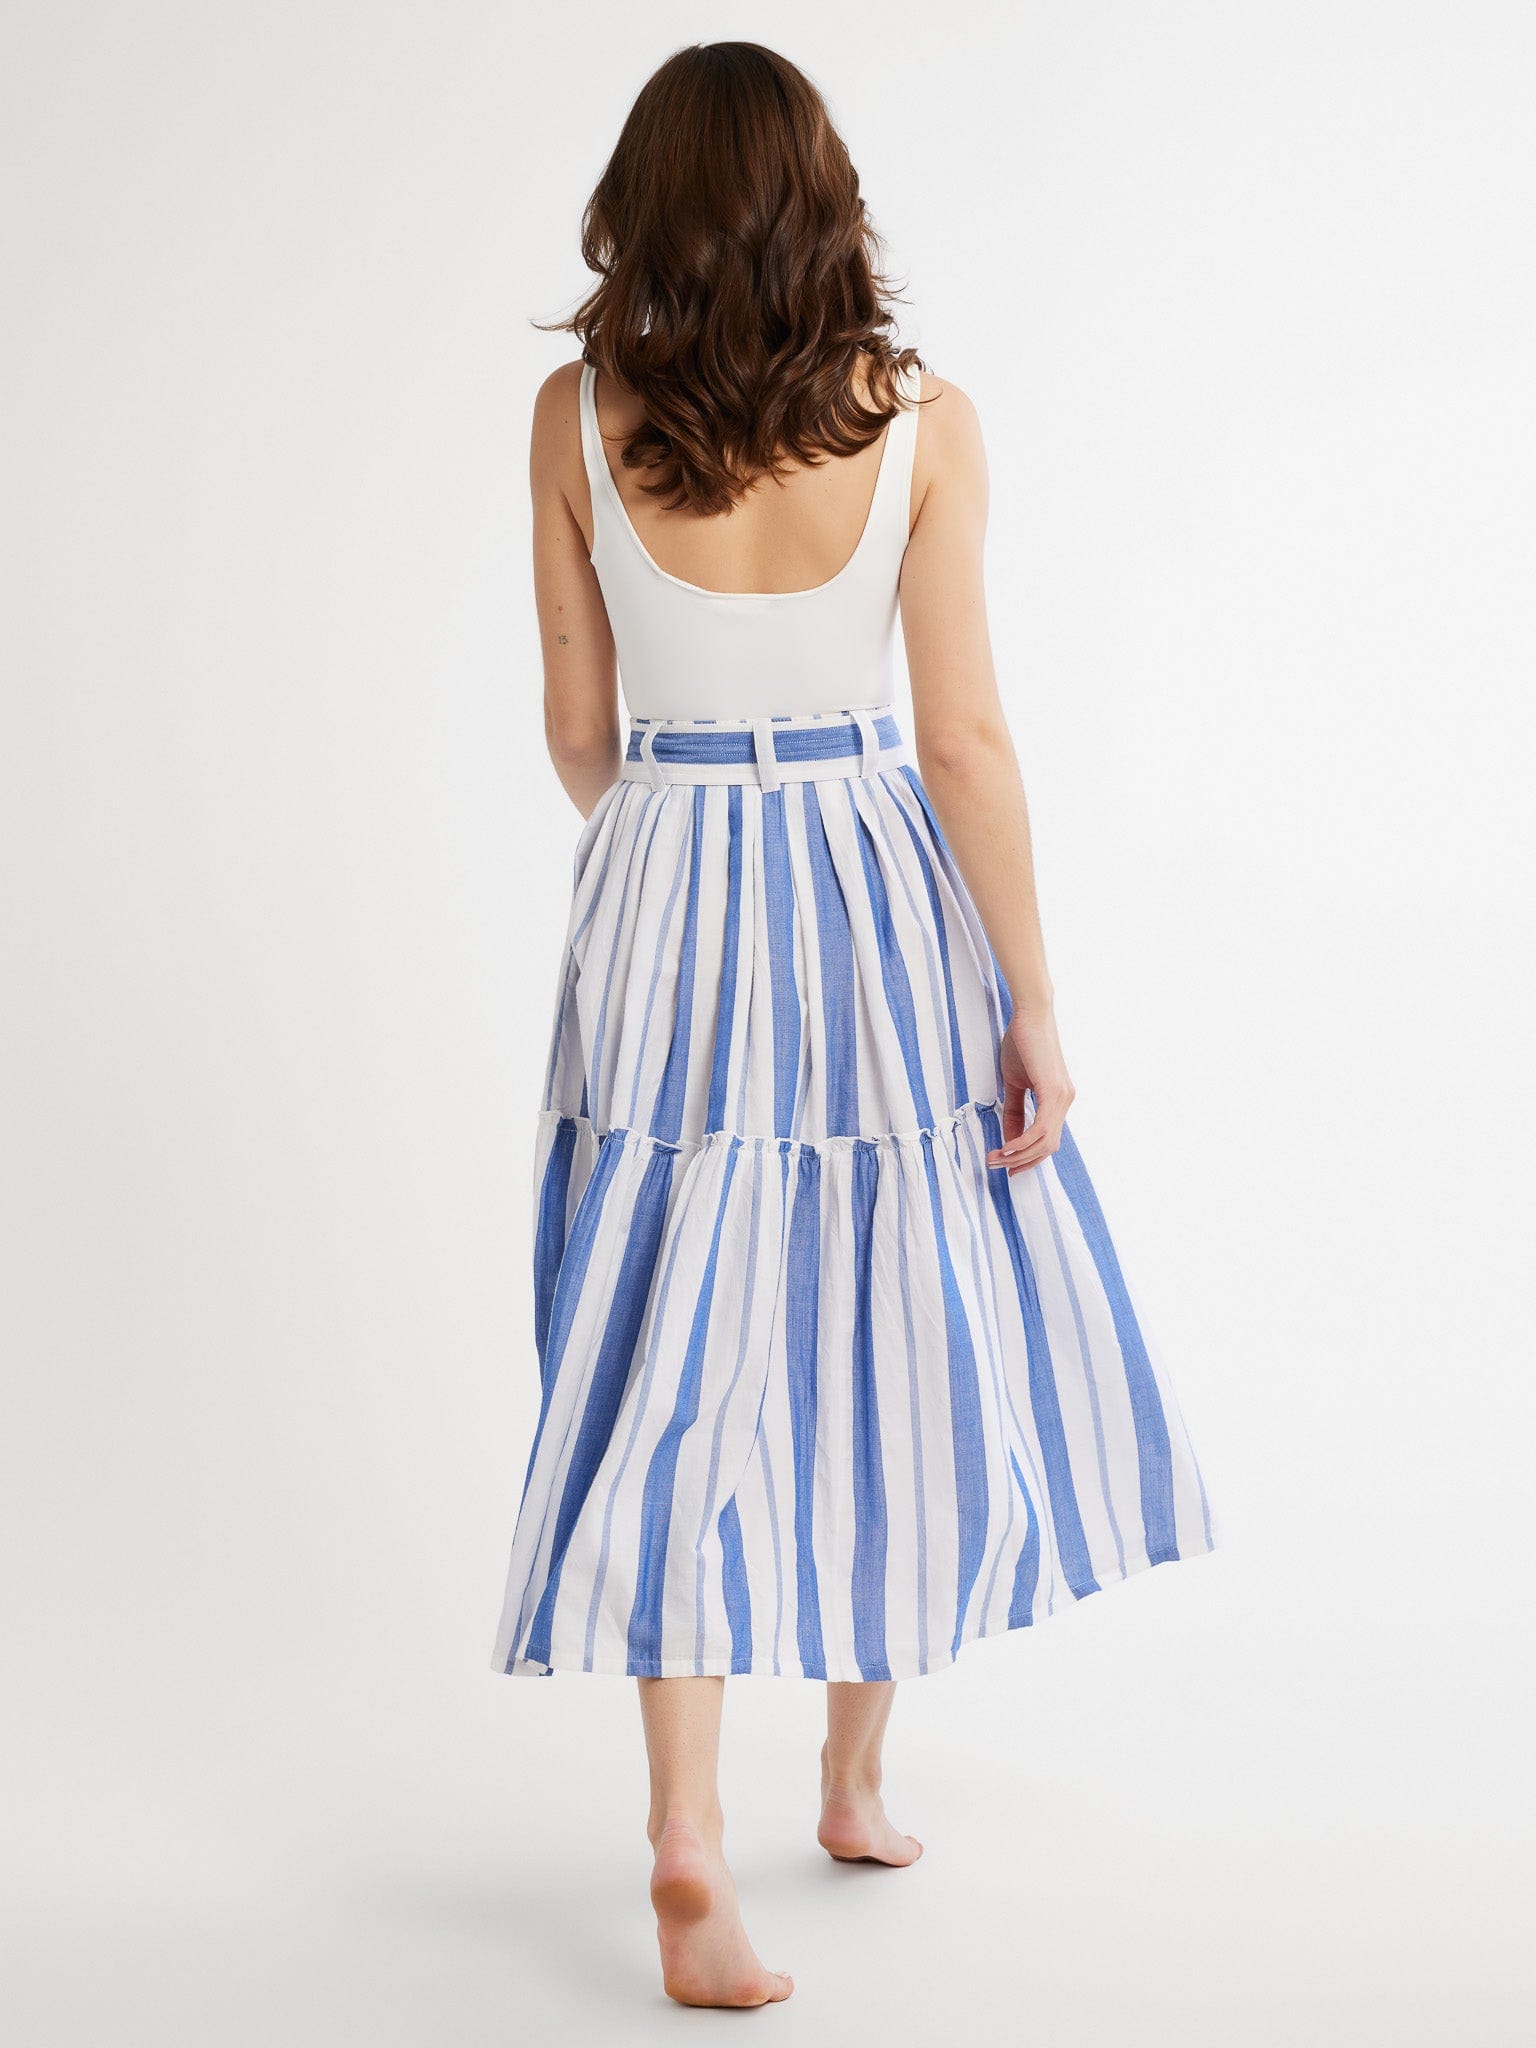 MILLE Clothing Françoise Skirt in Nantucket Stripe